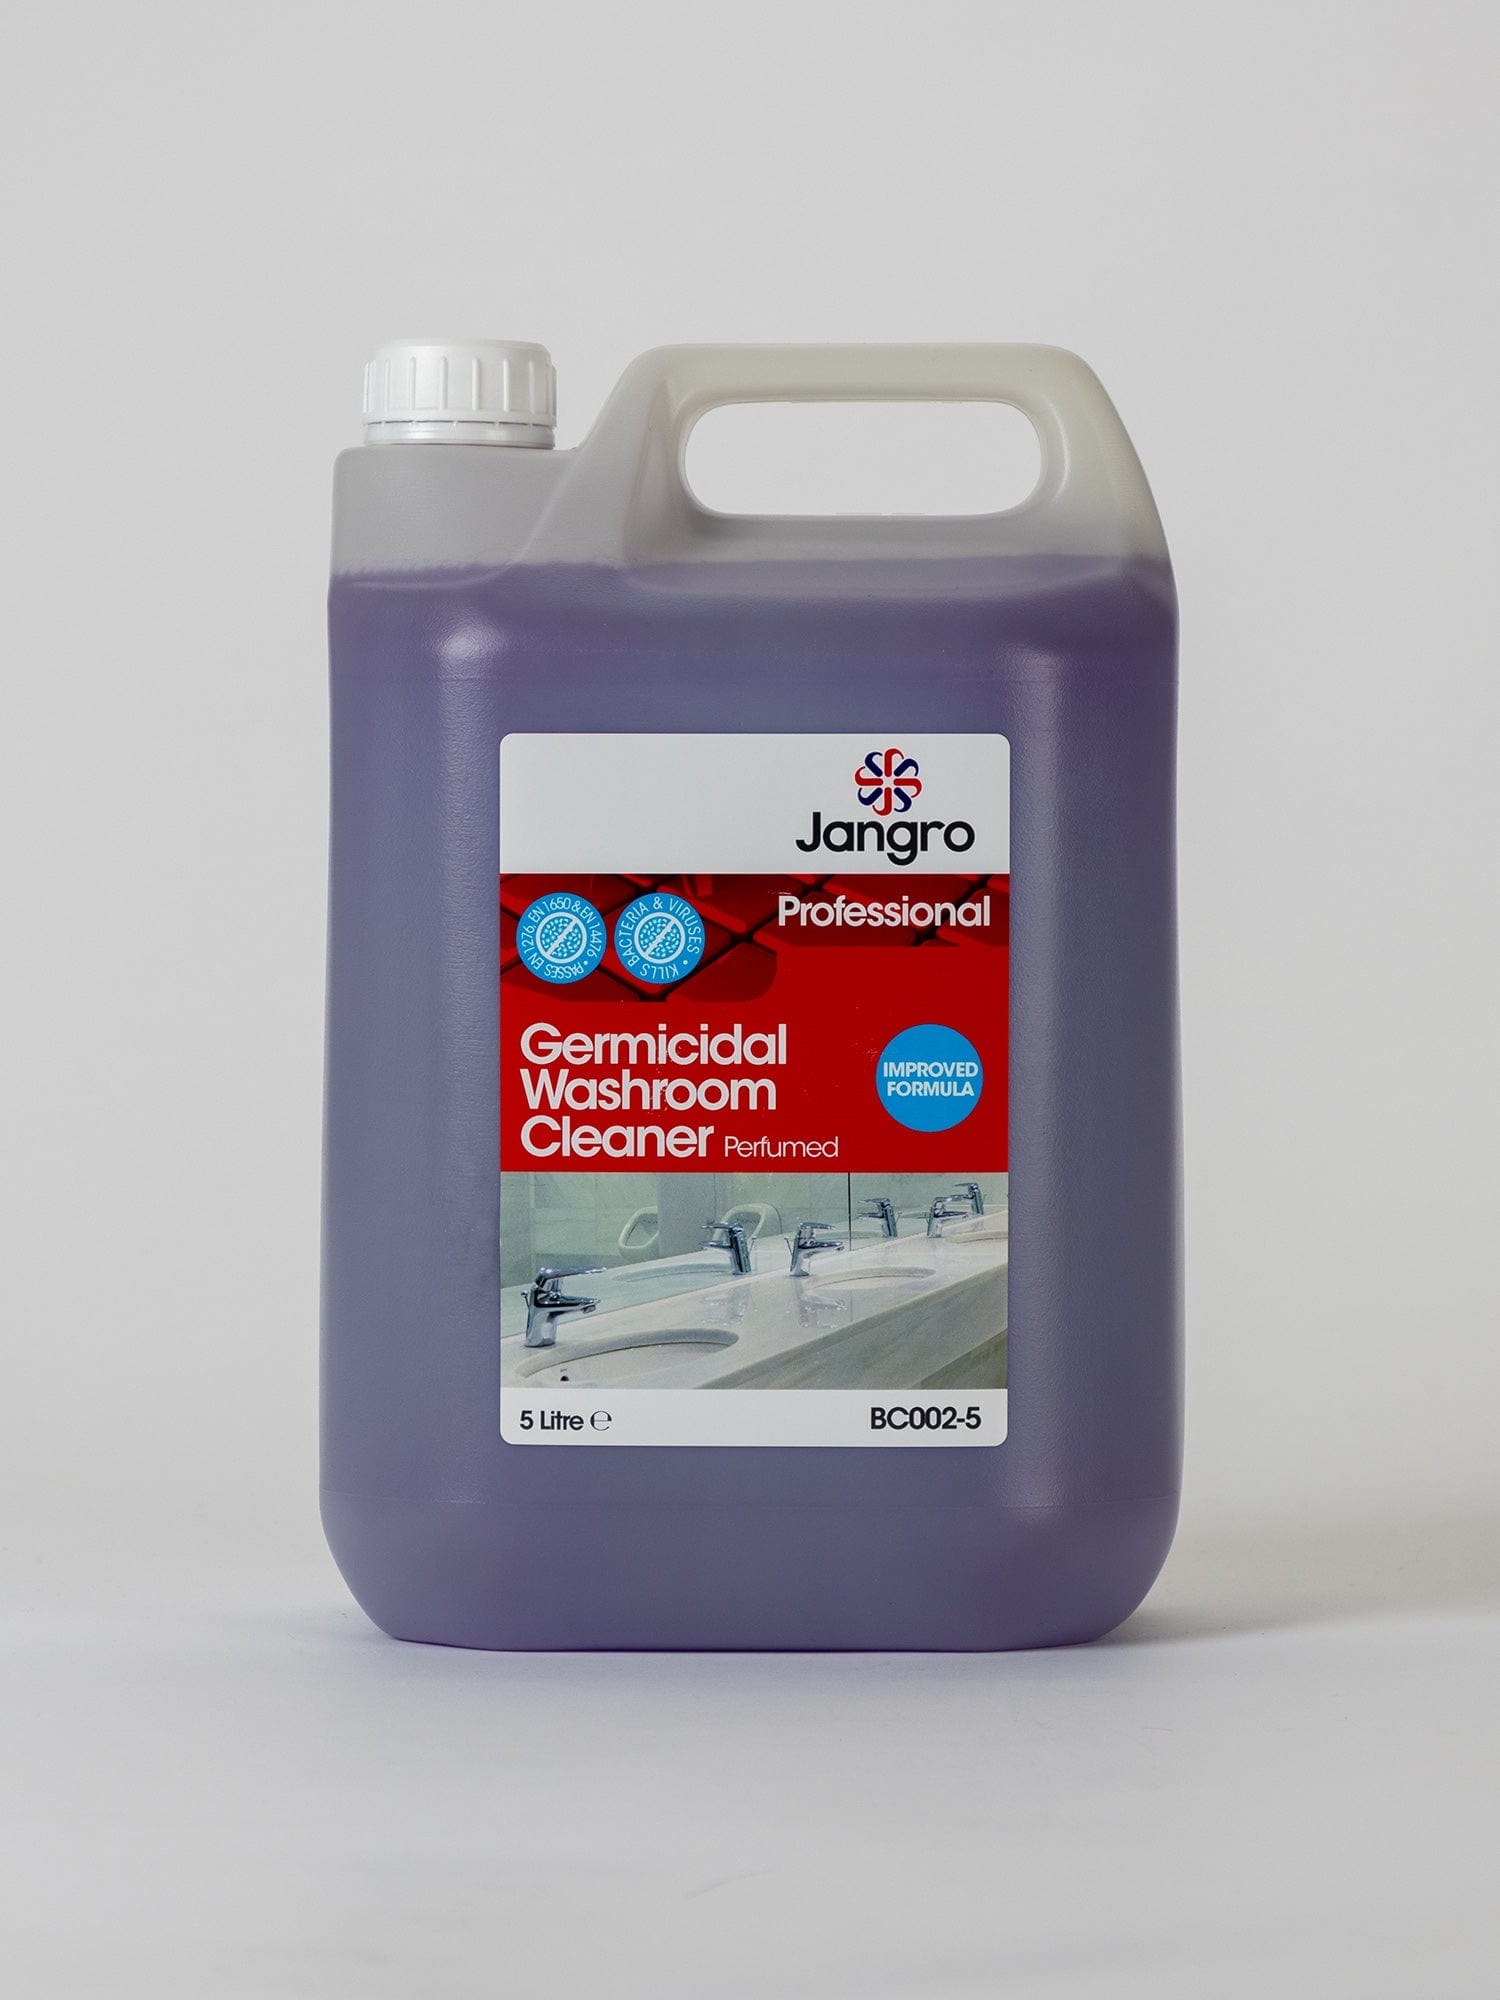 jangro germicidal washroom cleaner perfumed